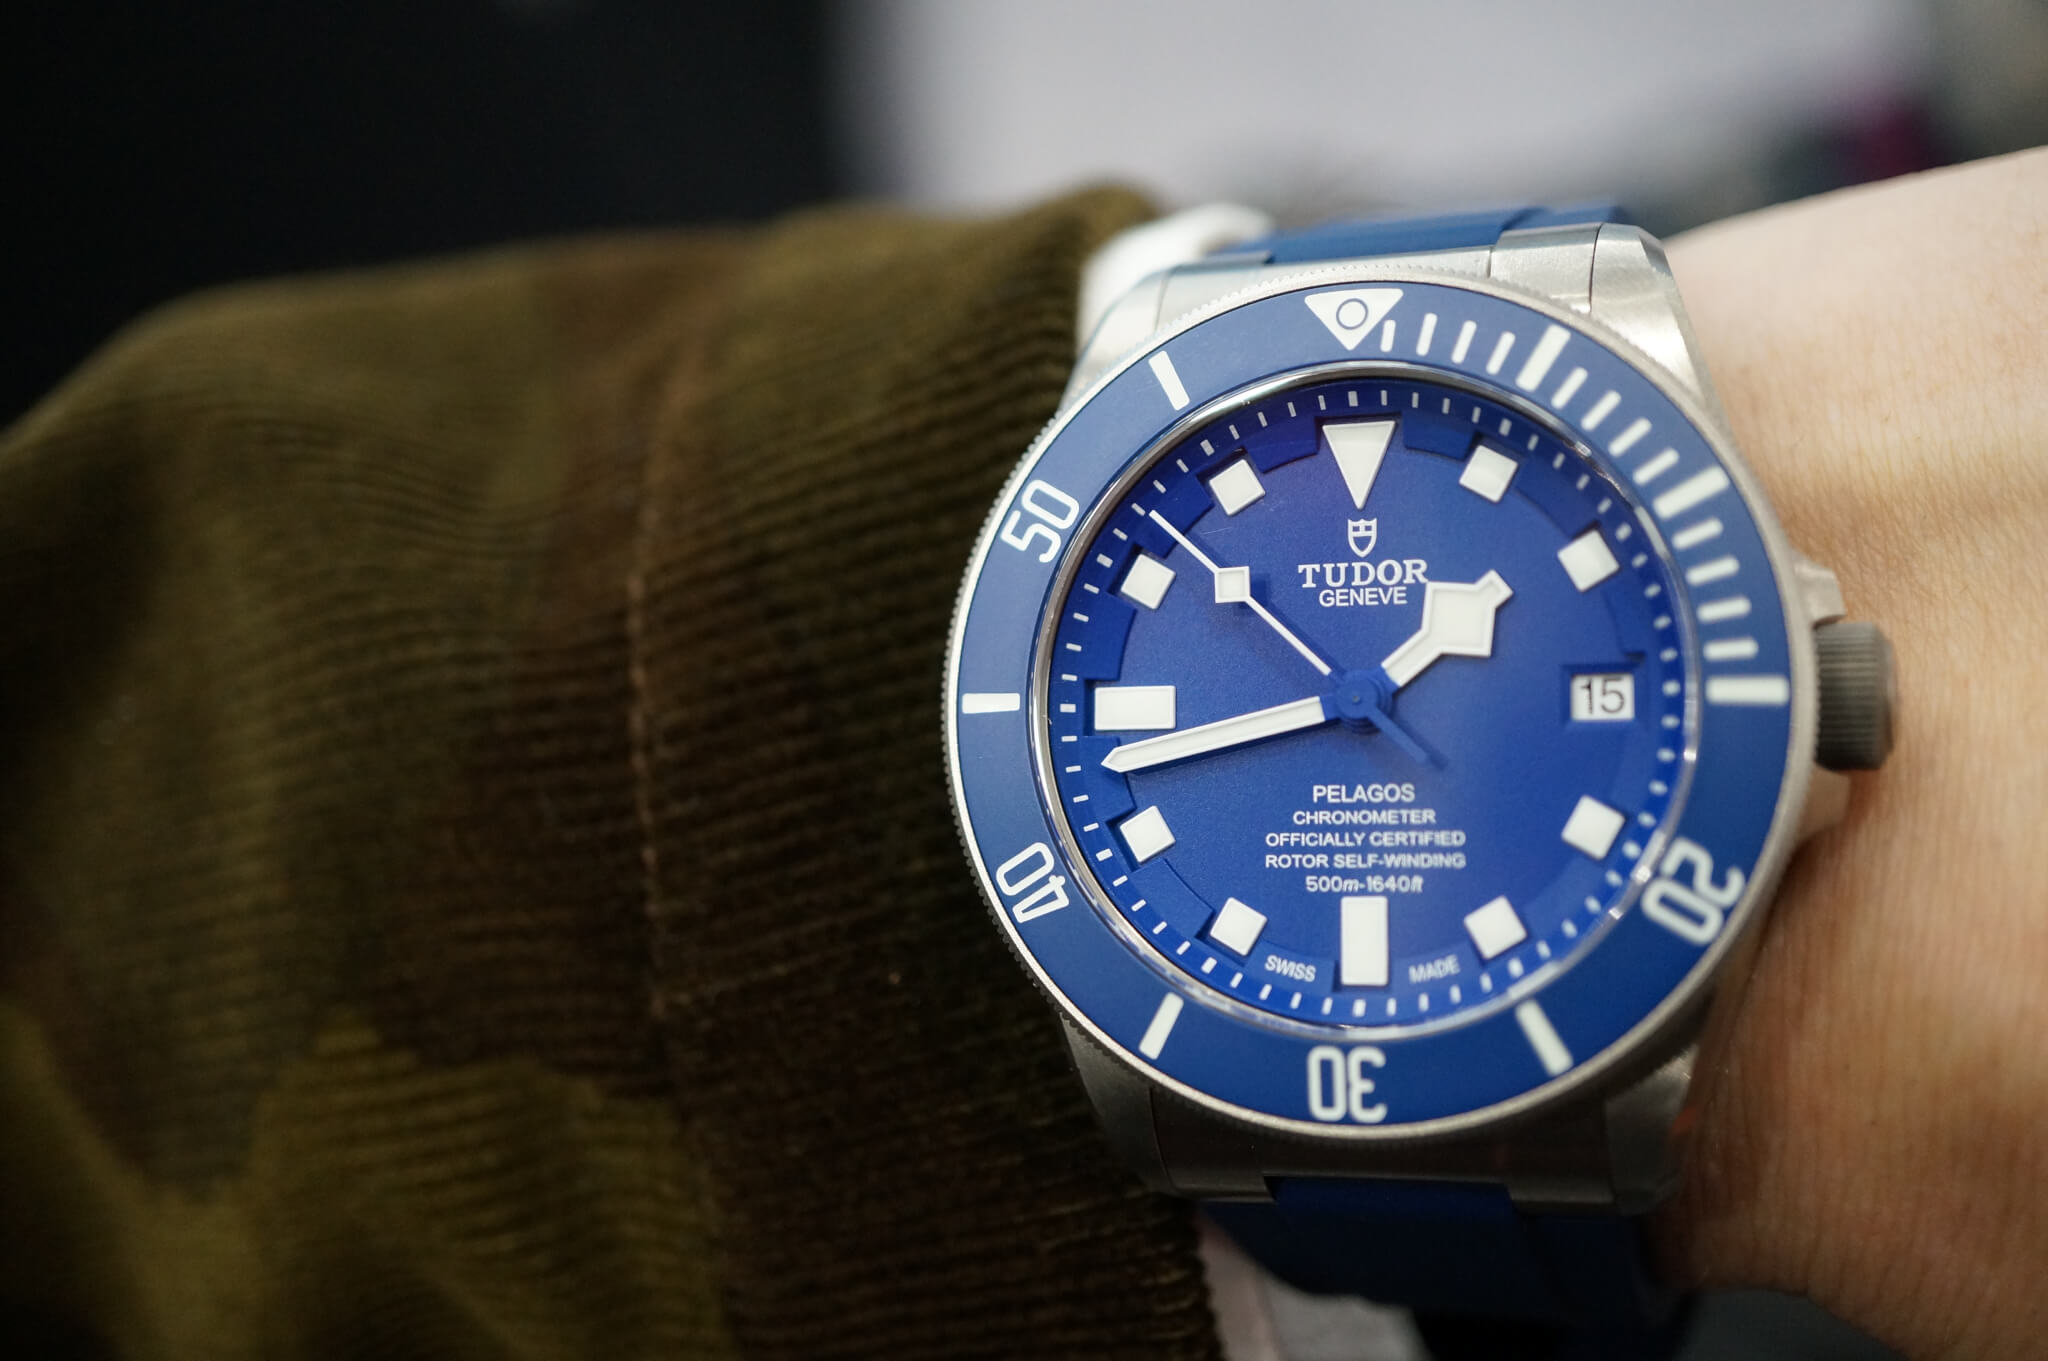 The distinctive Tudor Blue Pelagos diver's watch